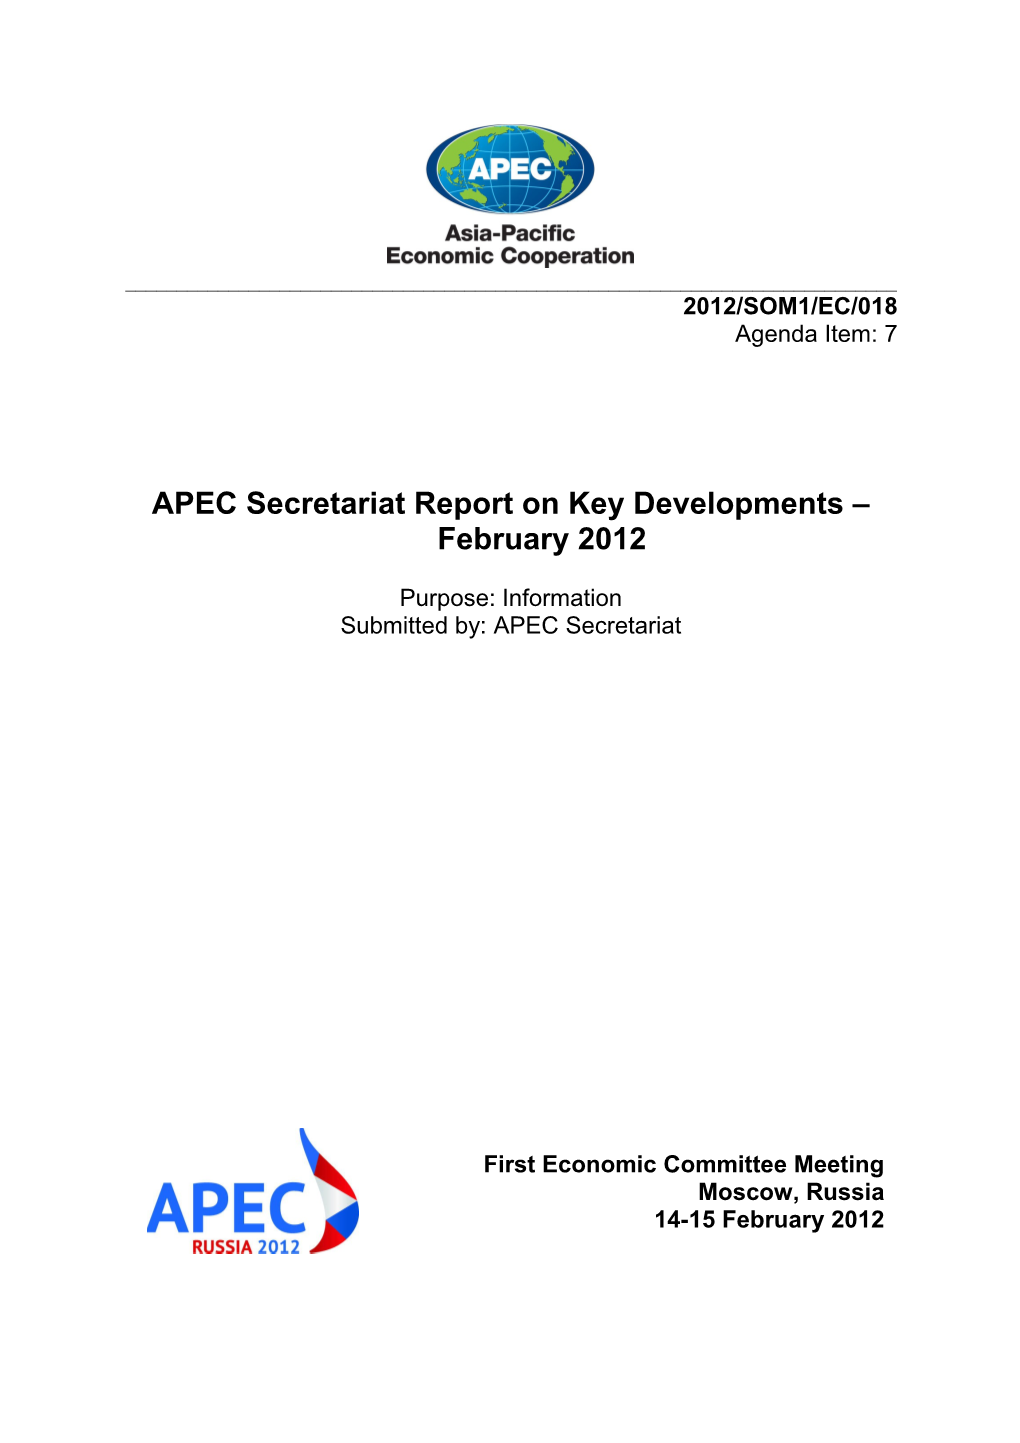 APEC Secretariat Report on Key Developments April 2010